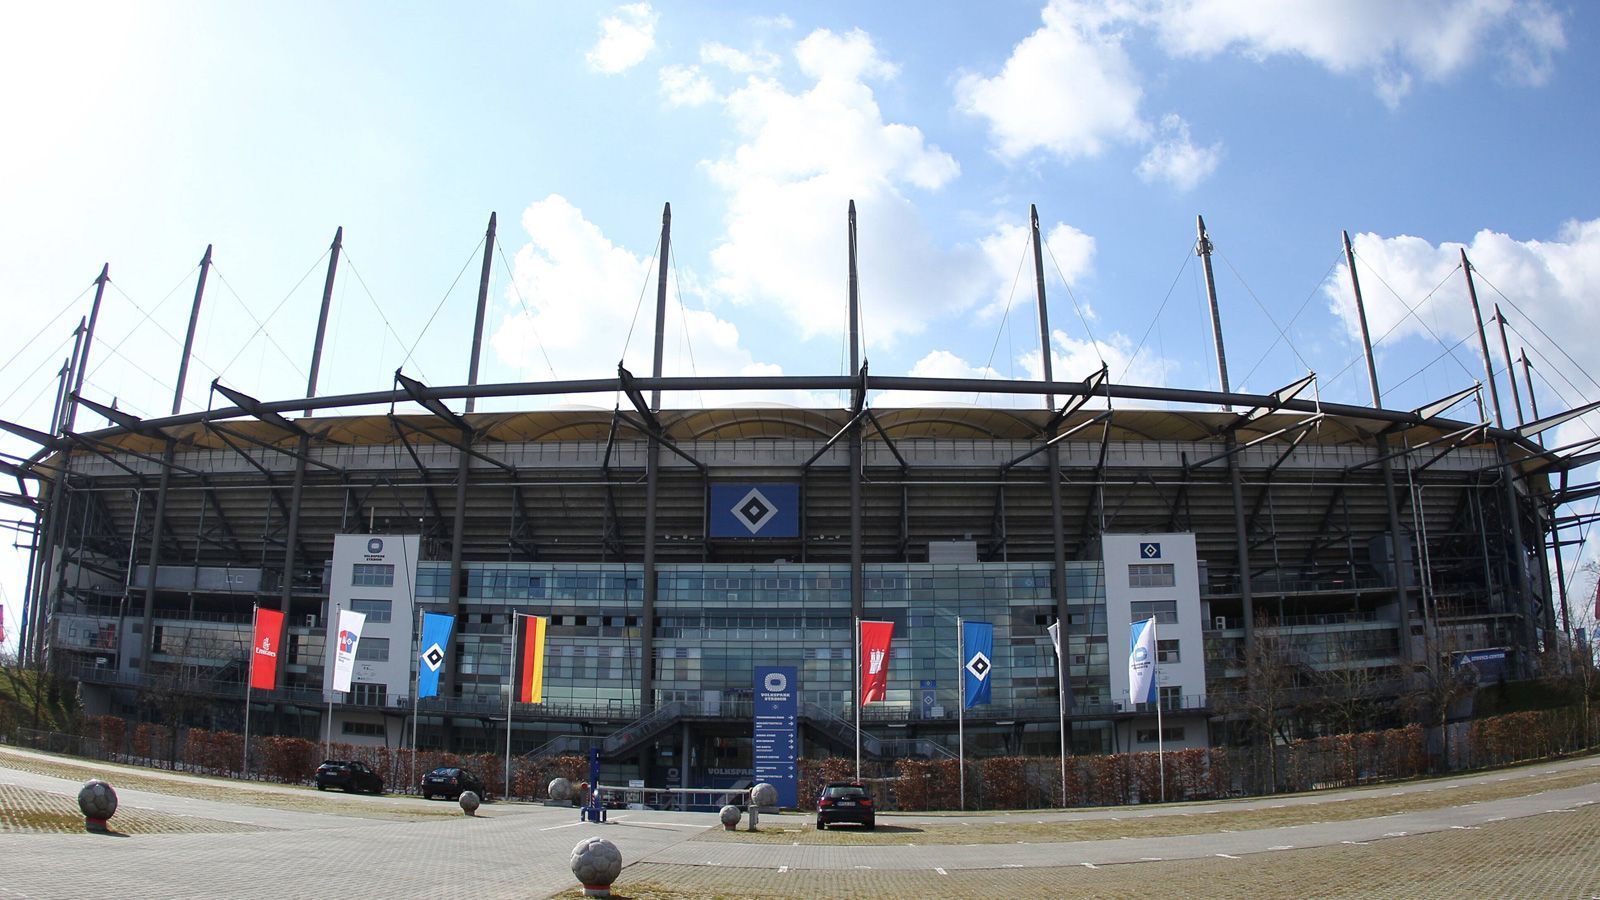 <strong>Volksparkstadion in Hamburg </strong><br>
                Eine Footballvergangenheit hat auch das Hamburger Volksparkstadion, schließlich war hier das NFL Europe-Team Hamburg Sea Devils - das mittlerweile in der European League of Football antritt - beheimatet. Mit einem Fassungsvermögen von 57.000 Zuschauern ist das Volksparkstadion größer als die Arena in Frankfurt, aber nicht so groß wie die Stadien in München und Berlin.
